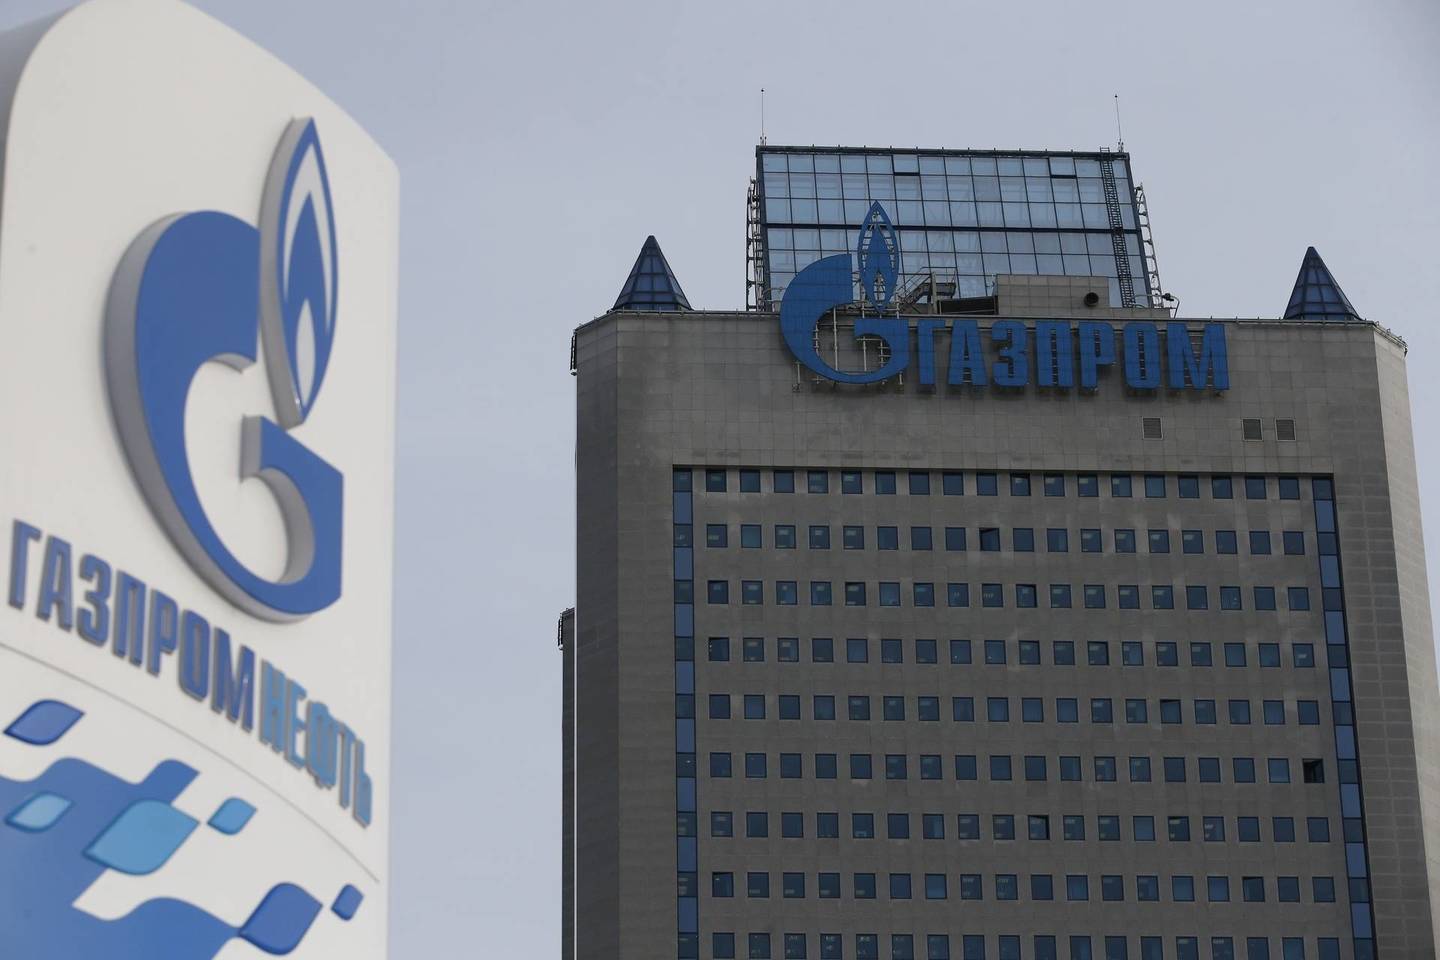 Oficialų tyrimą dėl „Gazprom“ veiklos ir per didelių dujų kainų Lietuvoje ir kai kuriose Rytų ir Pietų Europos šalyse EK pradėjo dar 2012 metais, įtarusi, jog koncernas piktnaudžiauja dominuojama padėtimi šalių dujų tiekimo rinkoje.<br>Reuters/Scanpix nuotr.